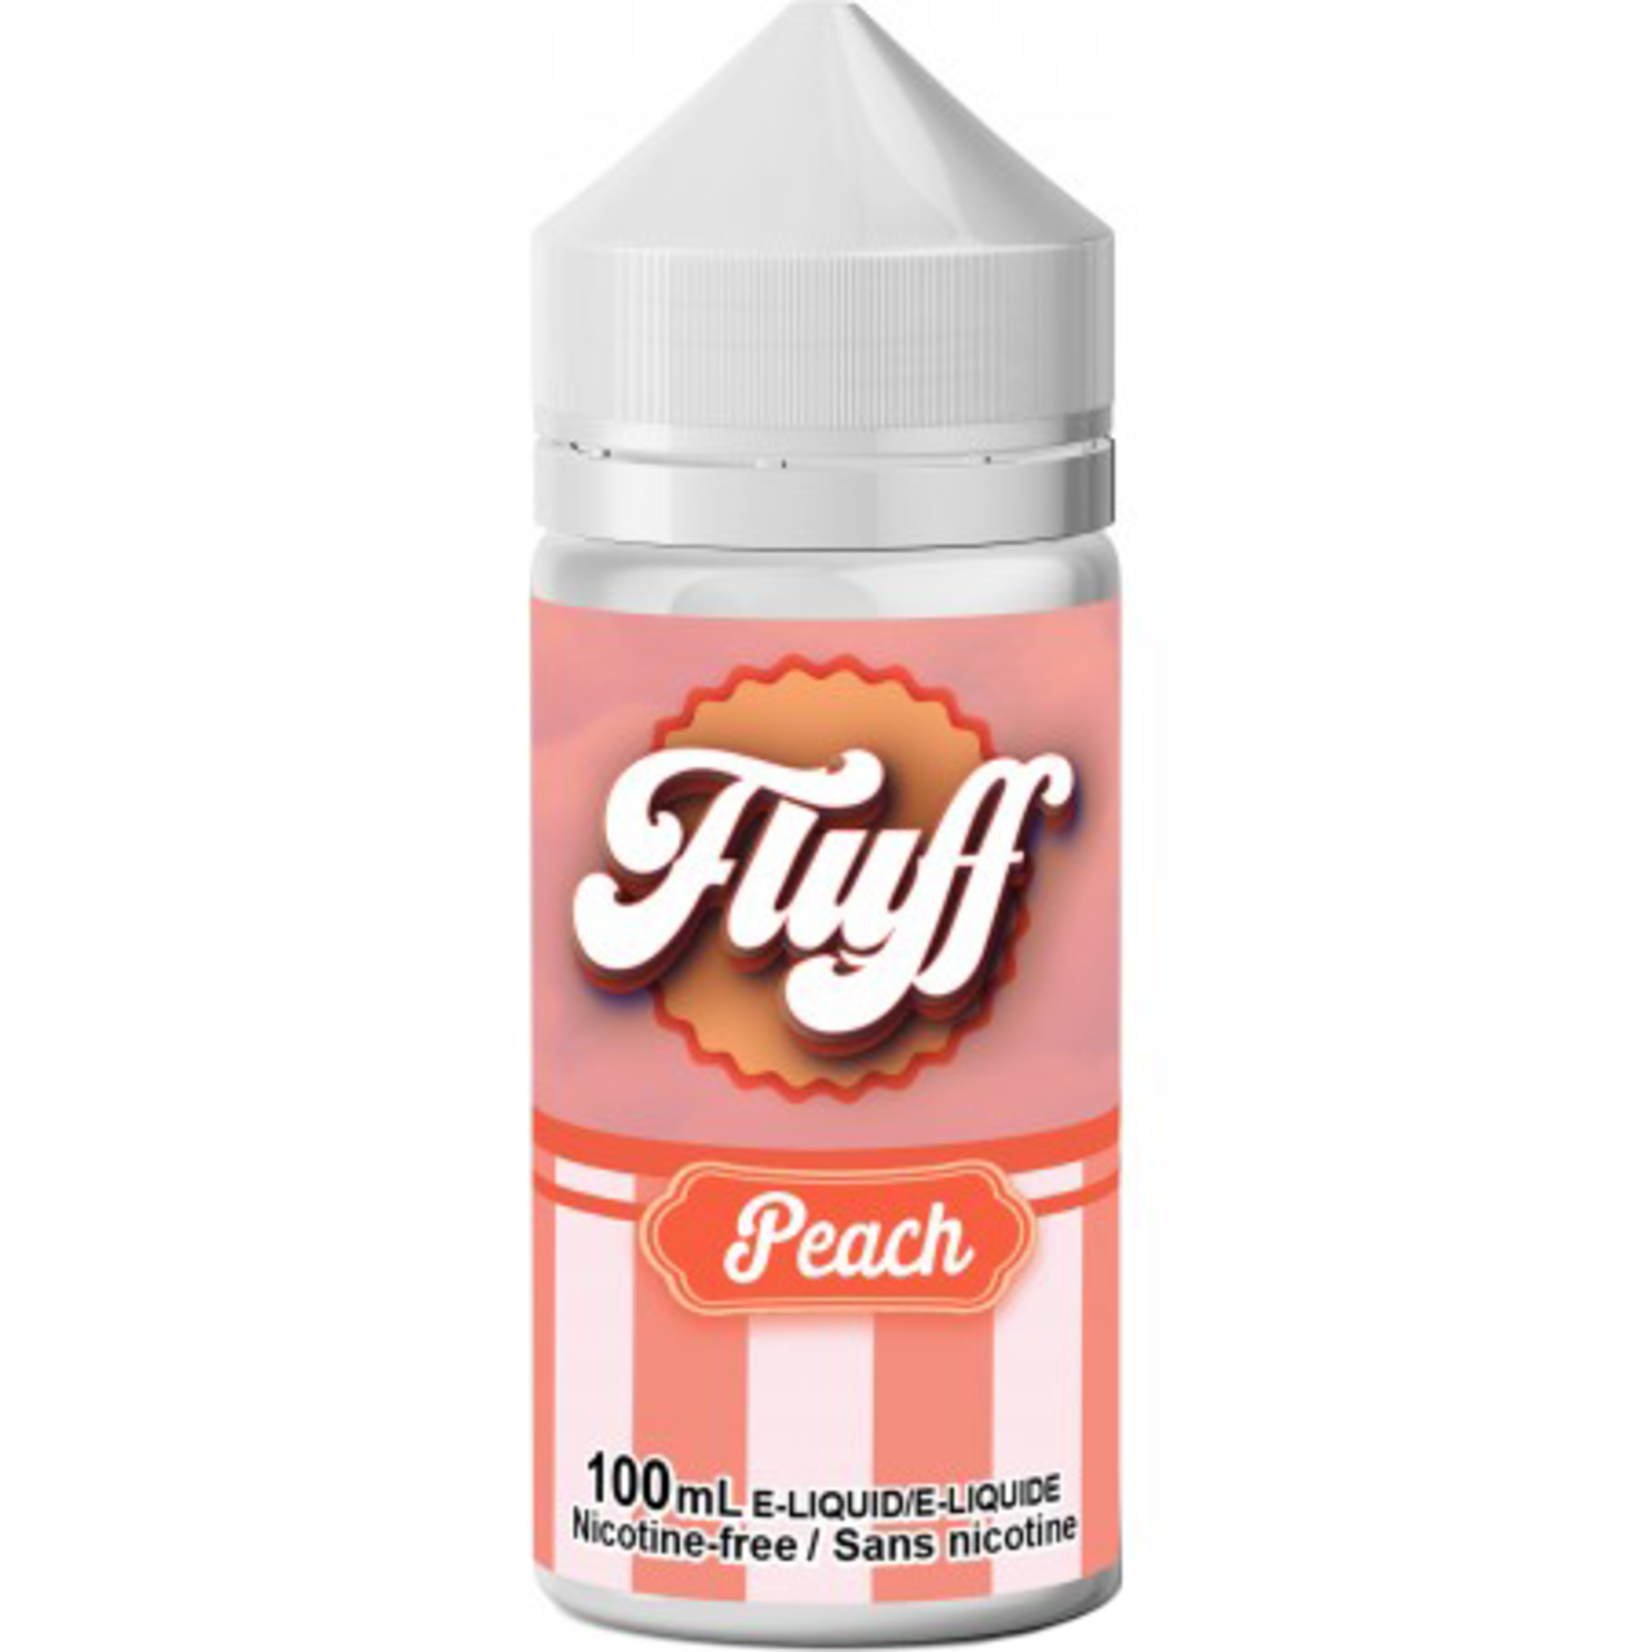 Fluff Peach